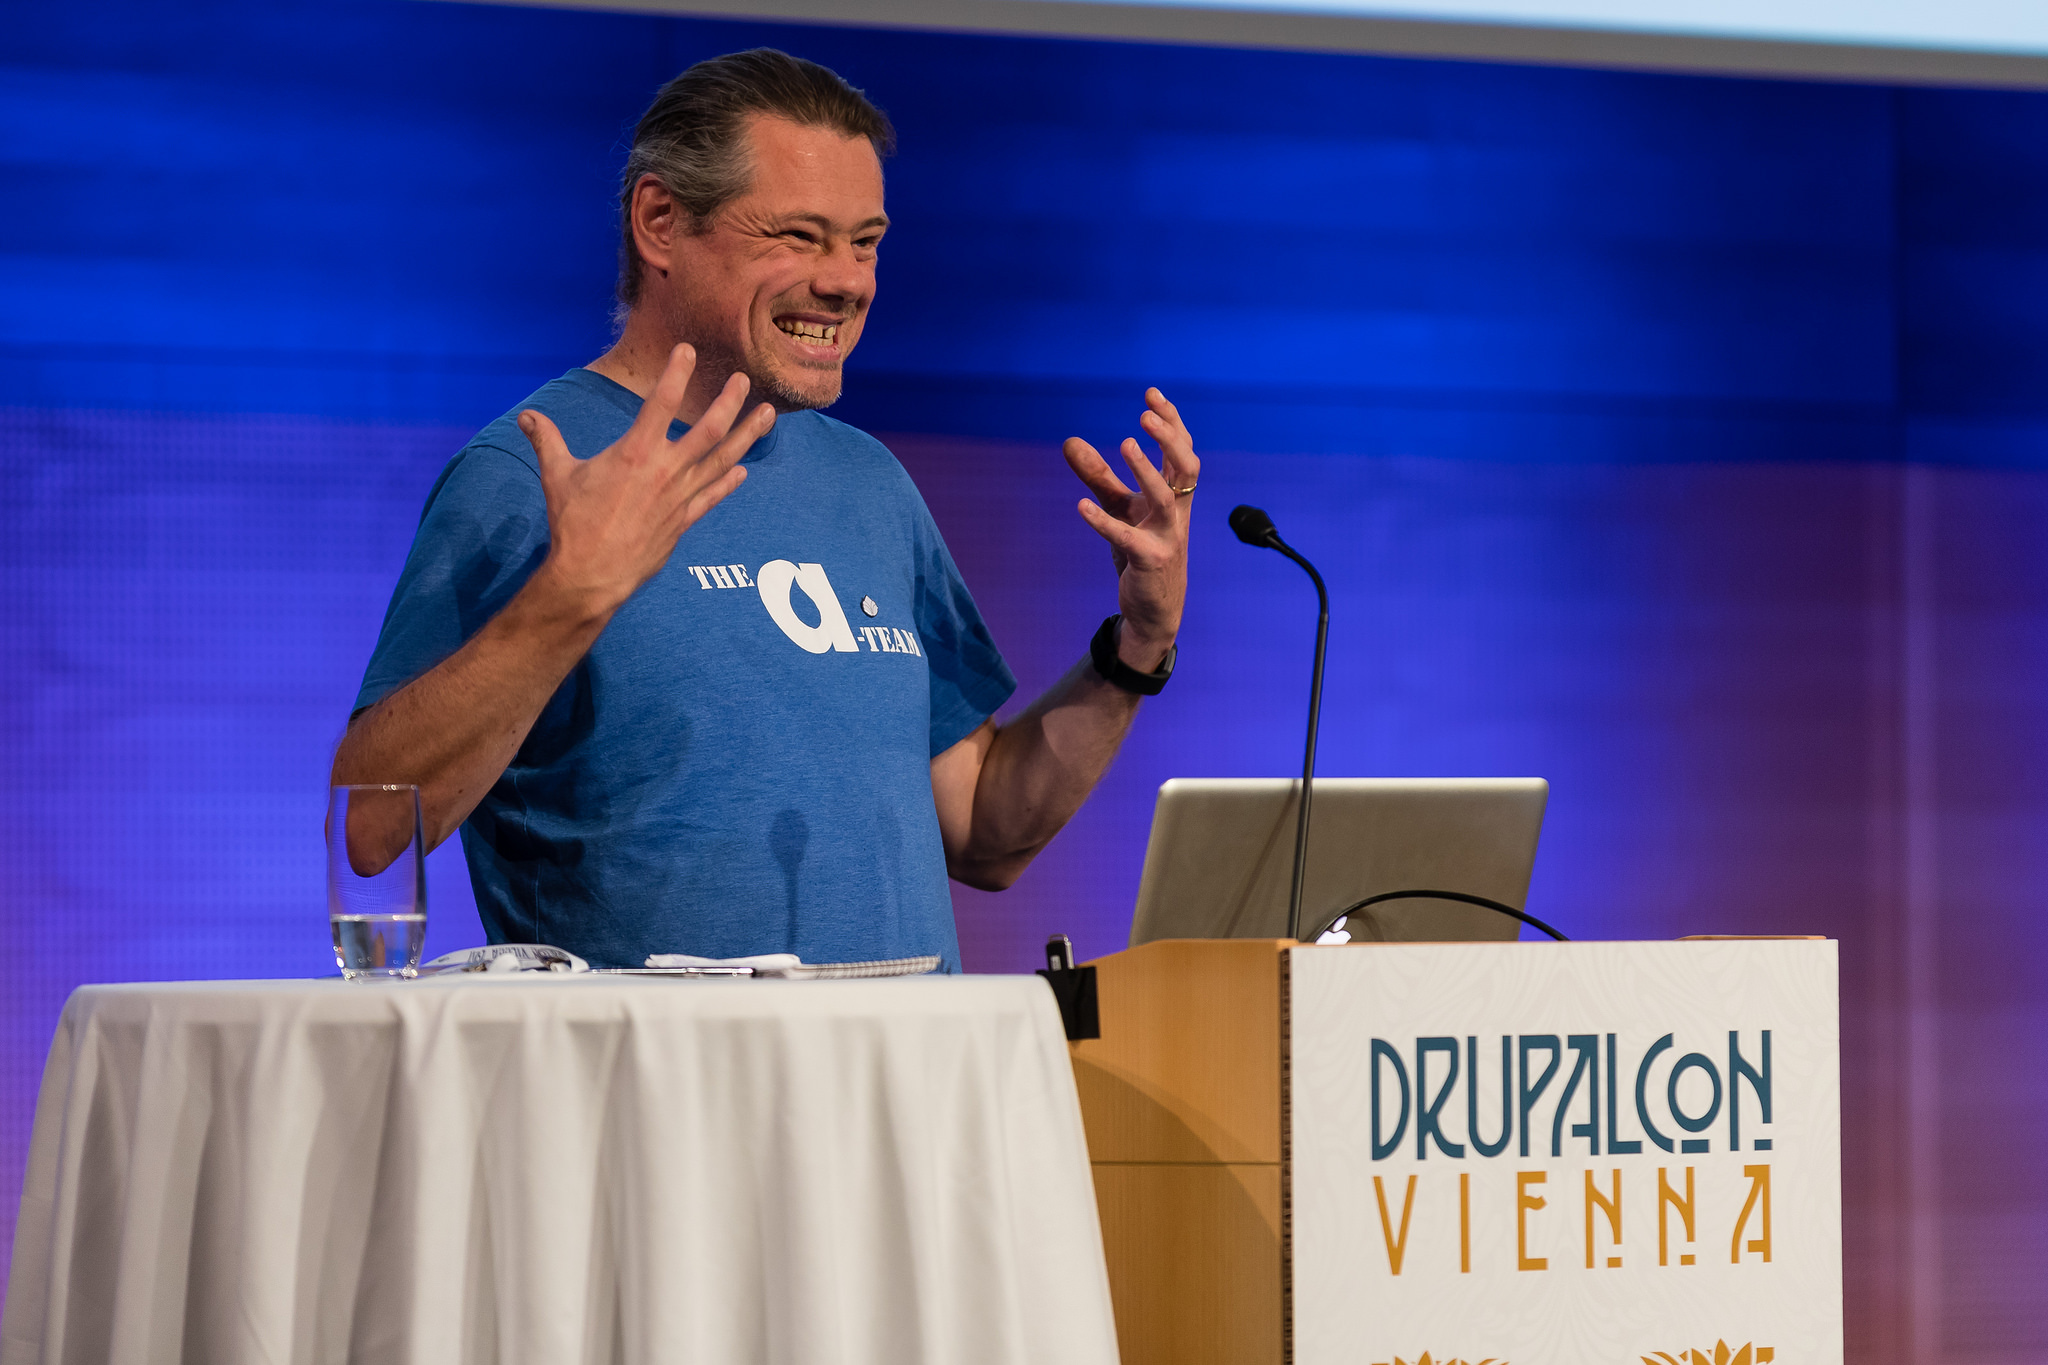 Anthony speaking at DrupalCon Vienna